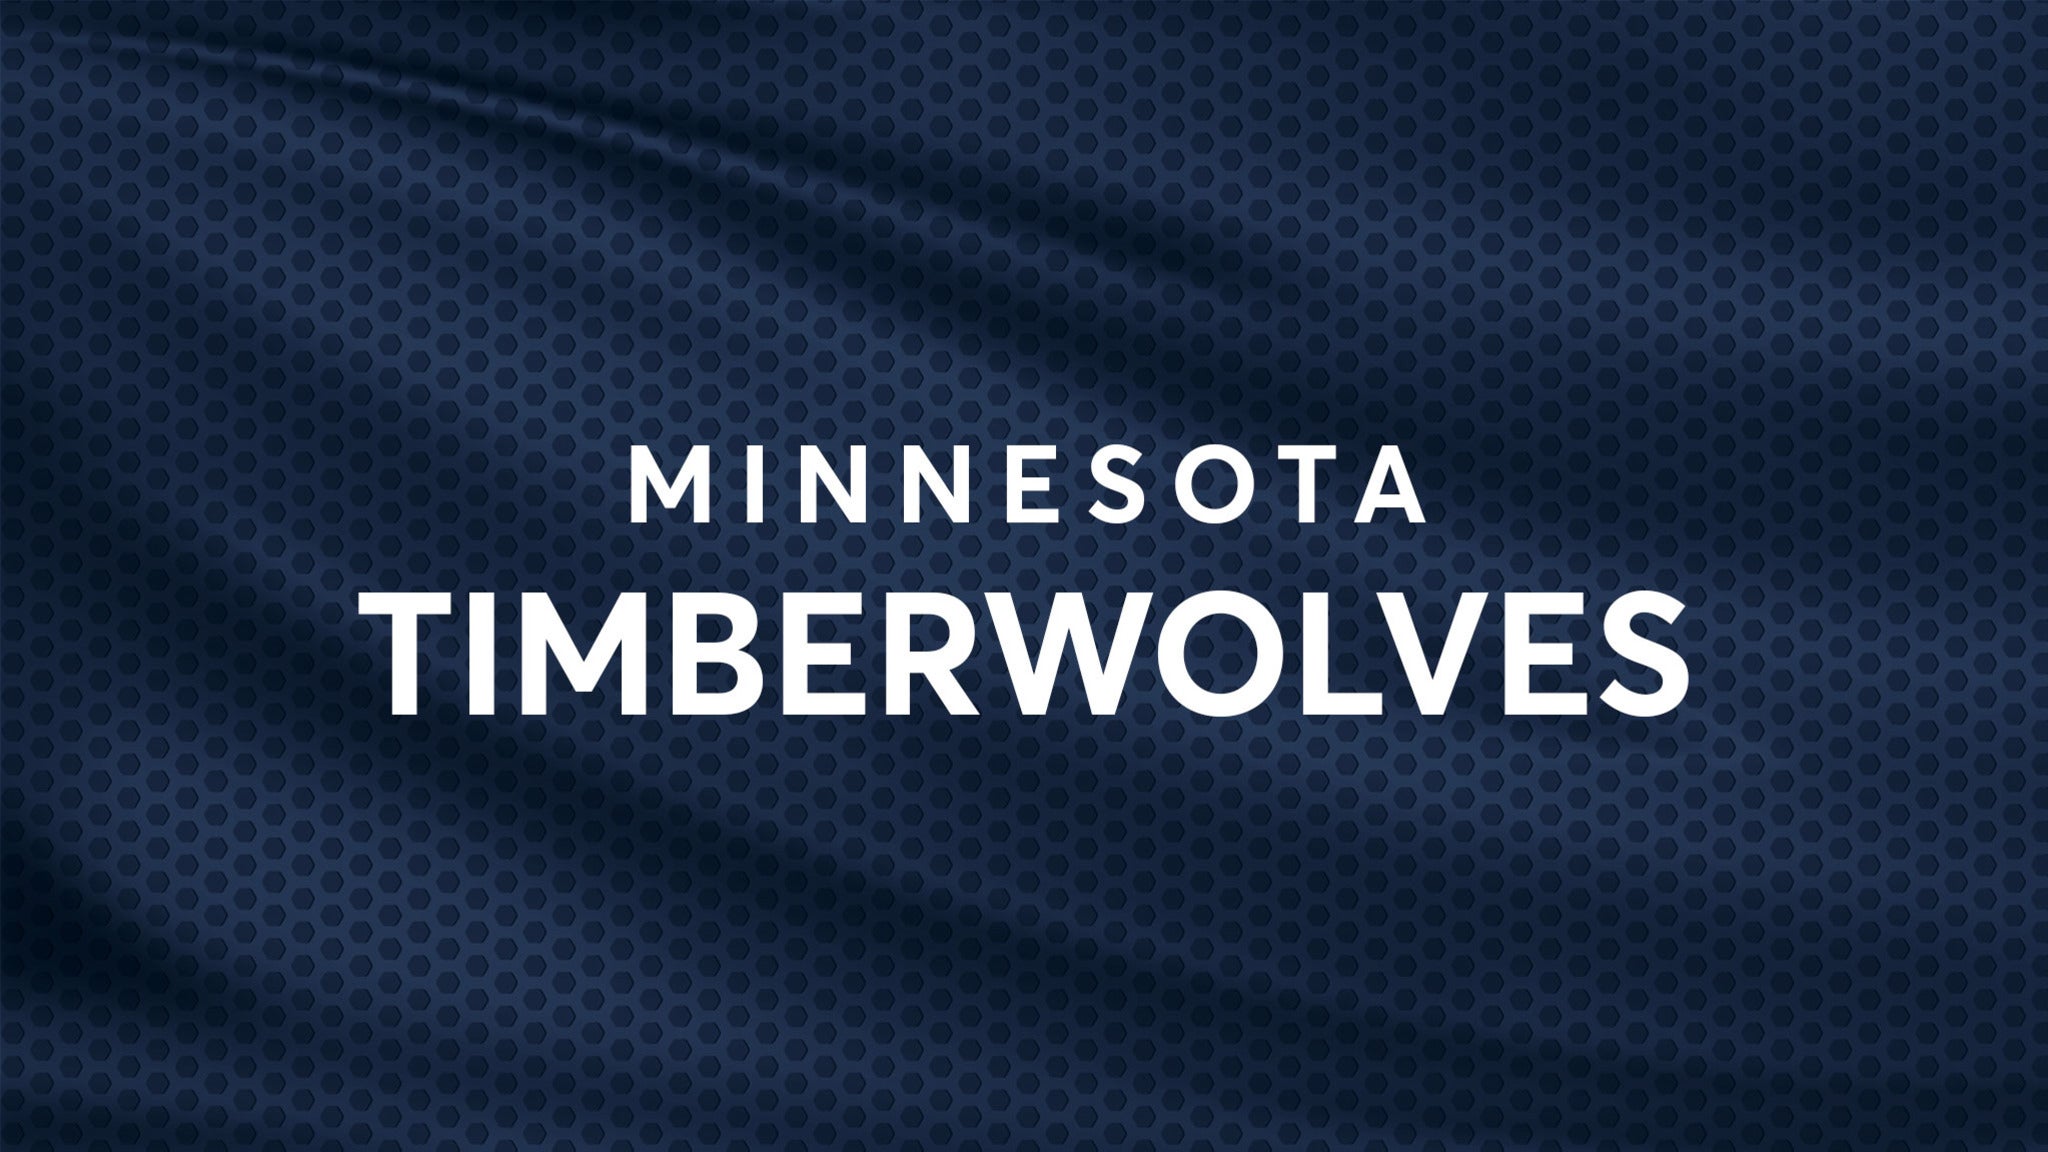 Minnesota Timberwolves vs. Charlotte Hornets